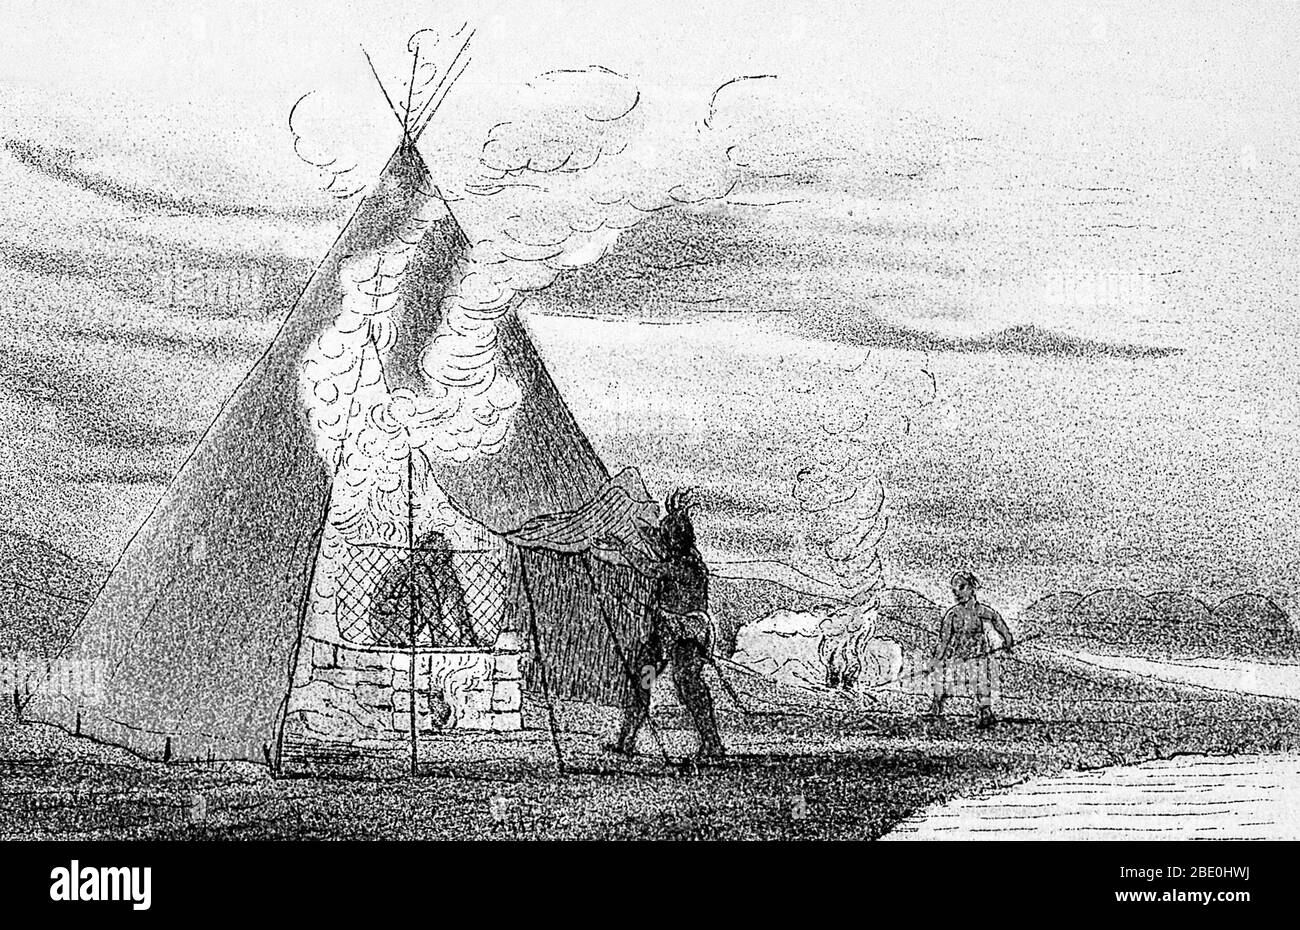 Sudatorii o bagni di vapore degli indiani del Nord America, dove il vapore è sollevato gettando l'acqua sulle pietre riscaldate, c. 1830 s. Ciò è stato fatto per motivi medici. George Catlin. Foto Stock